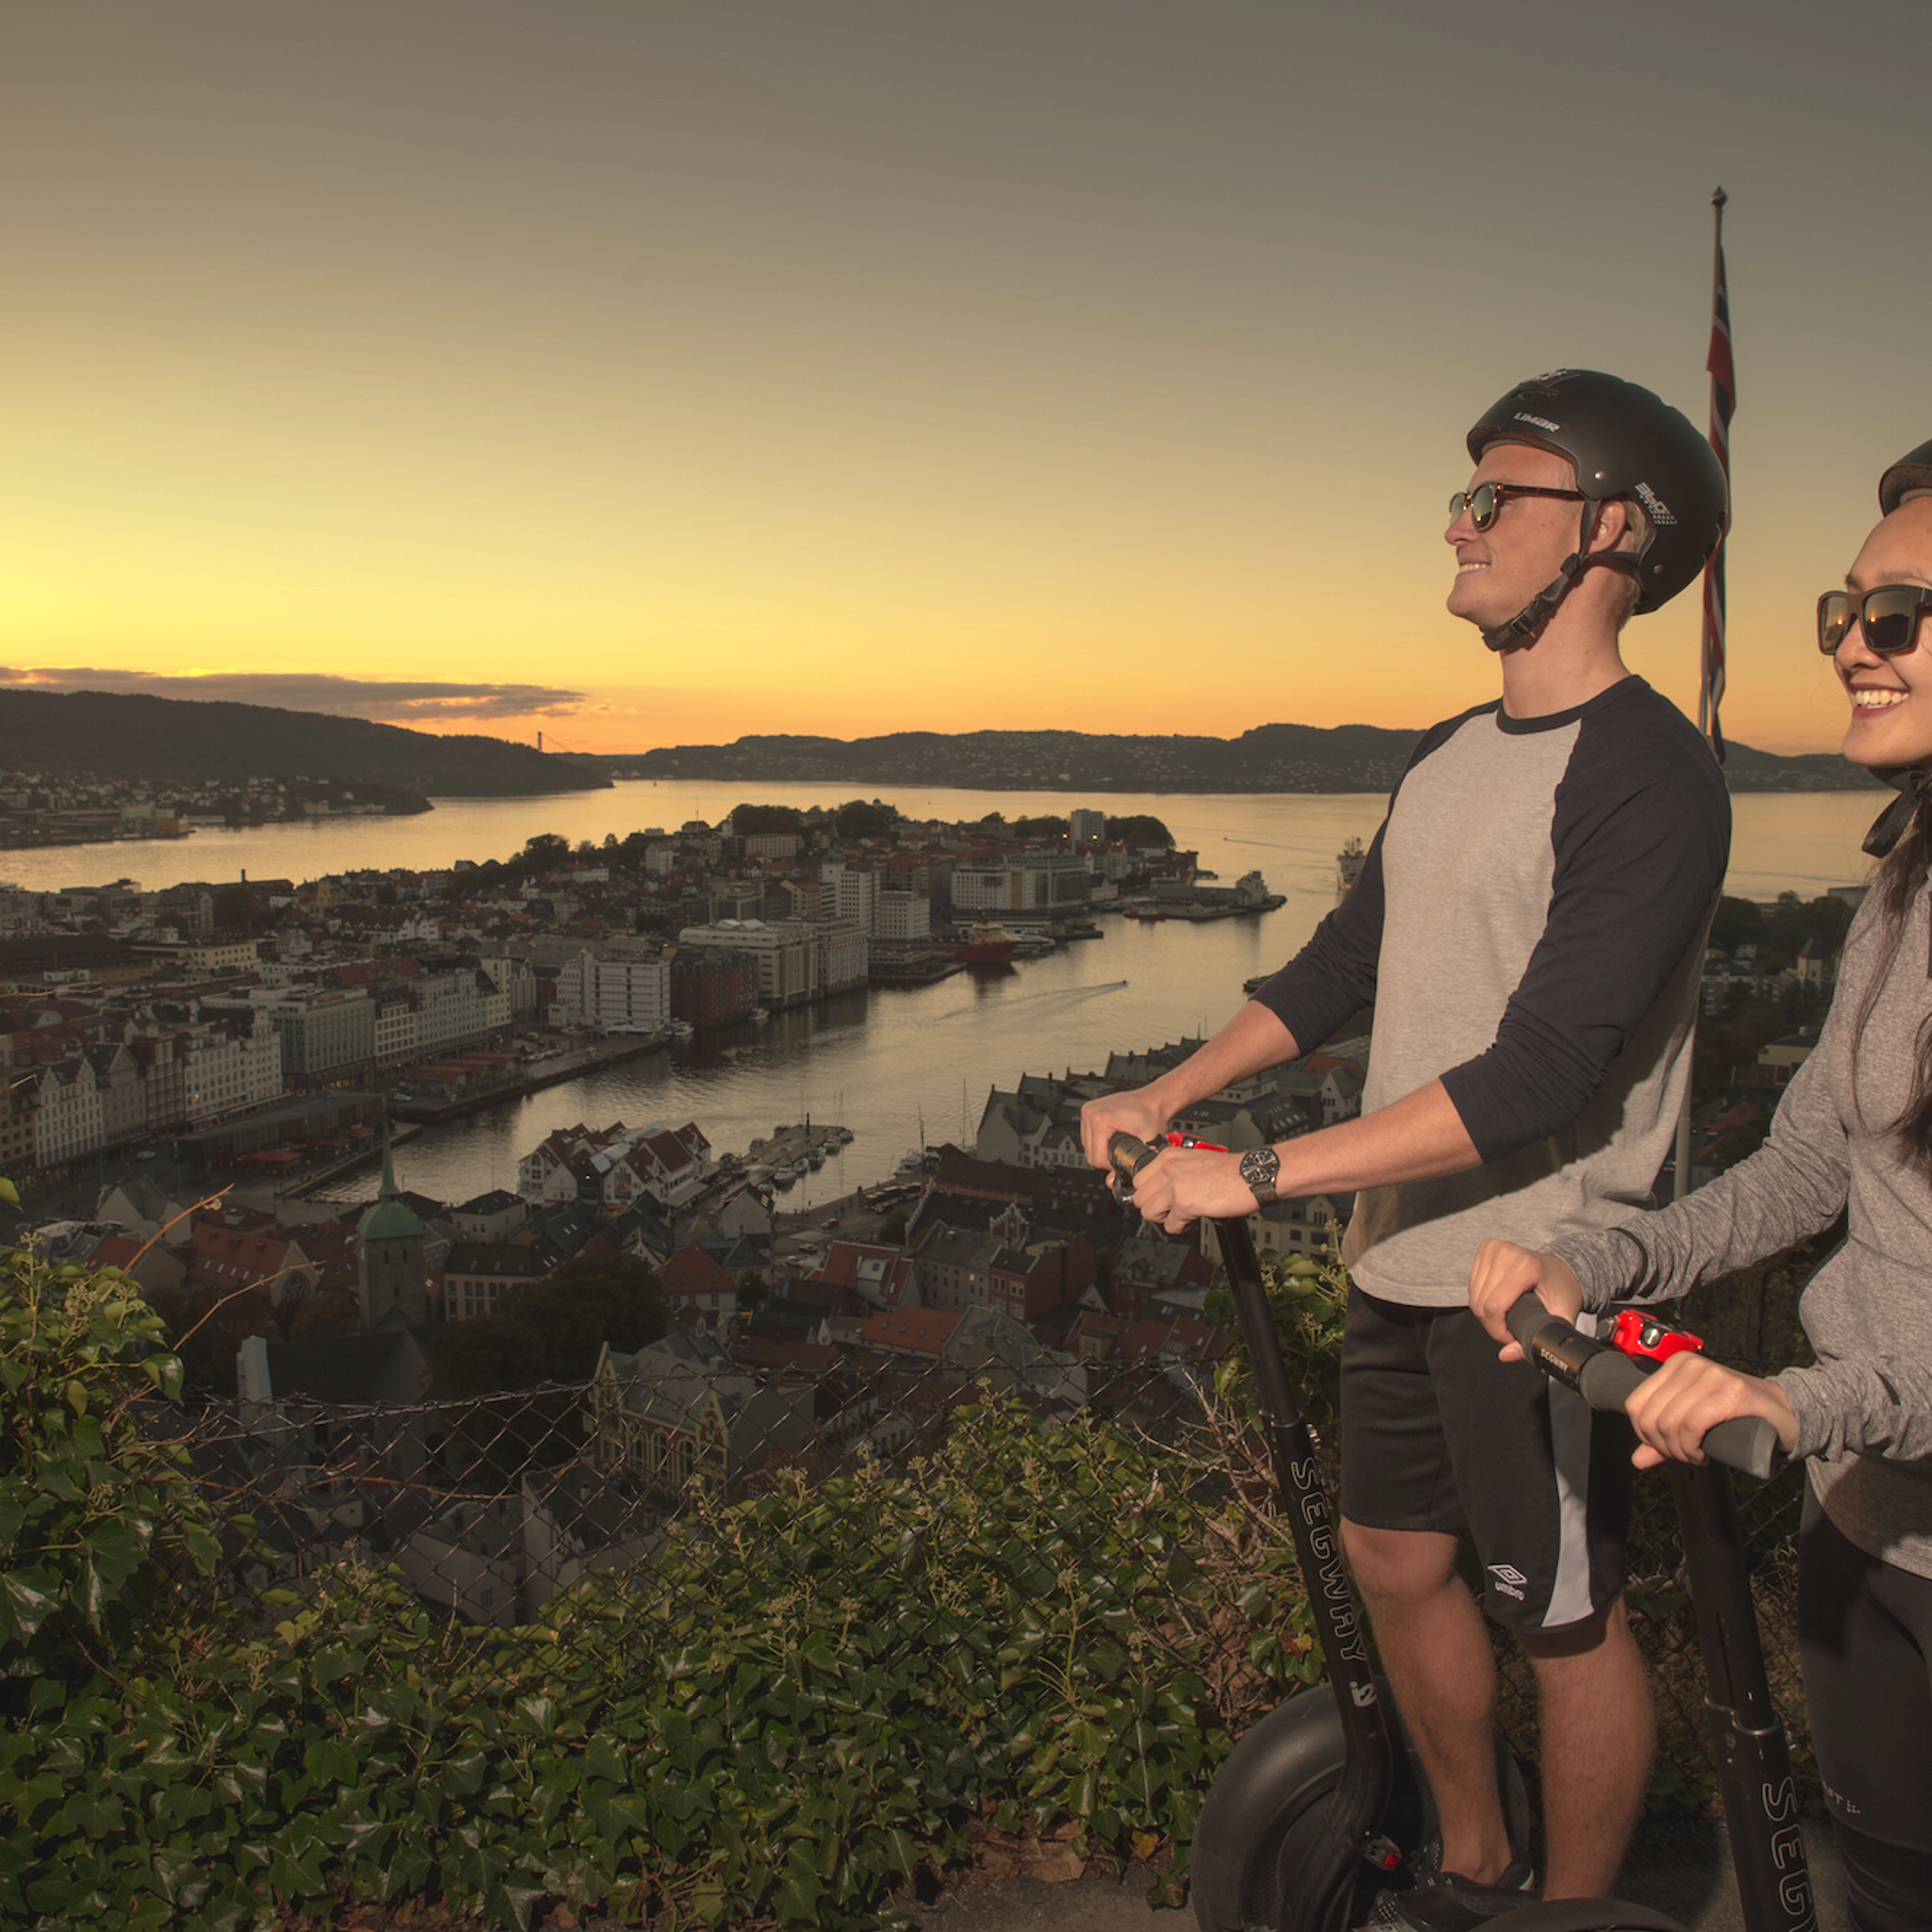 Ting å gjøre i Bergen - Nyter solnedgangen på en guidet Segway tur -Bergen by night